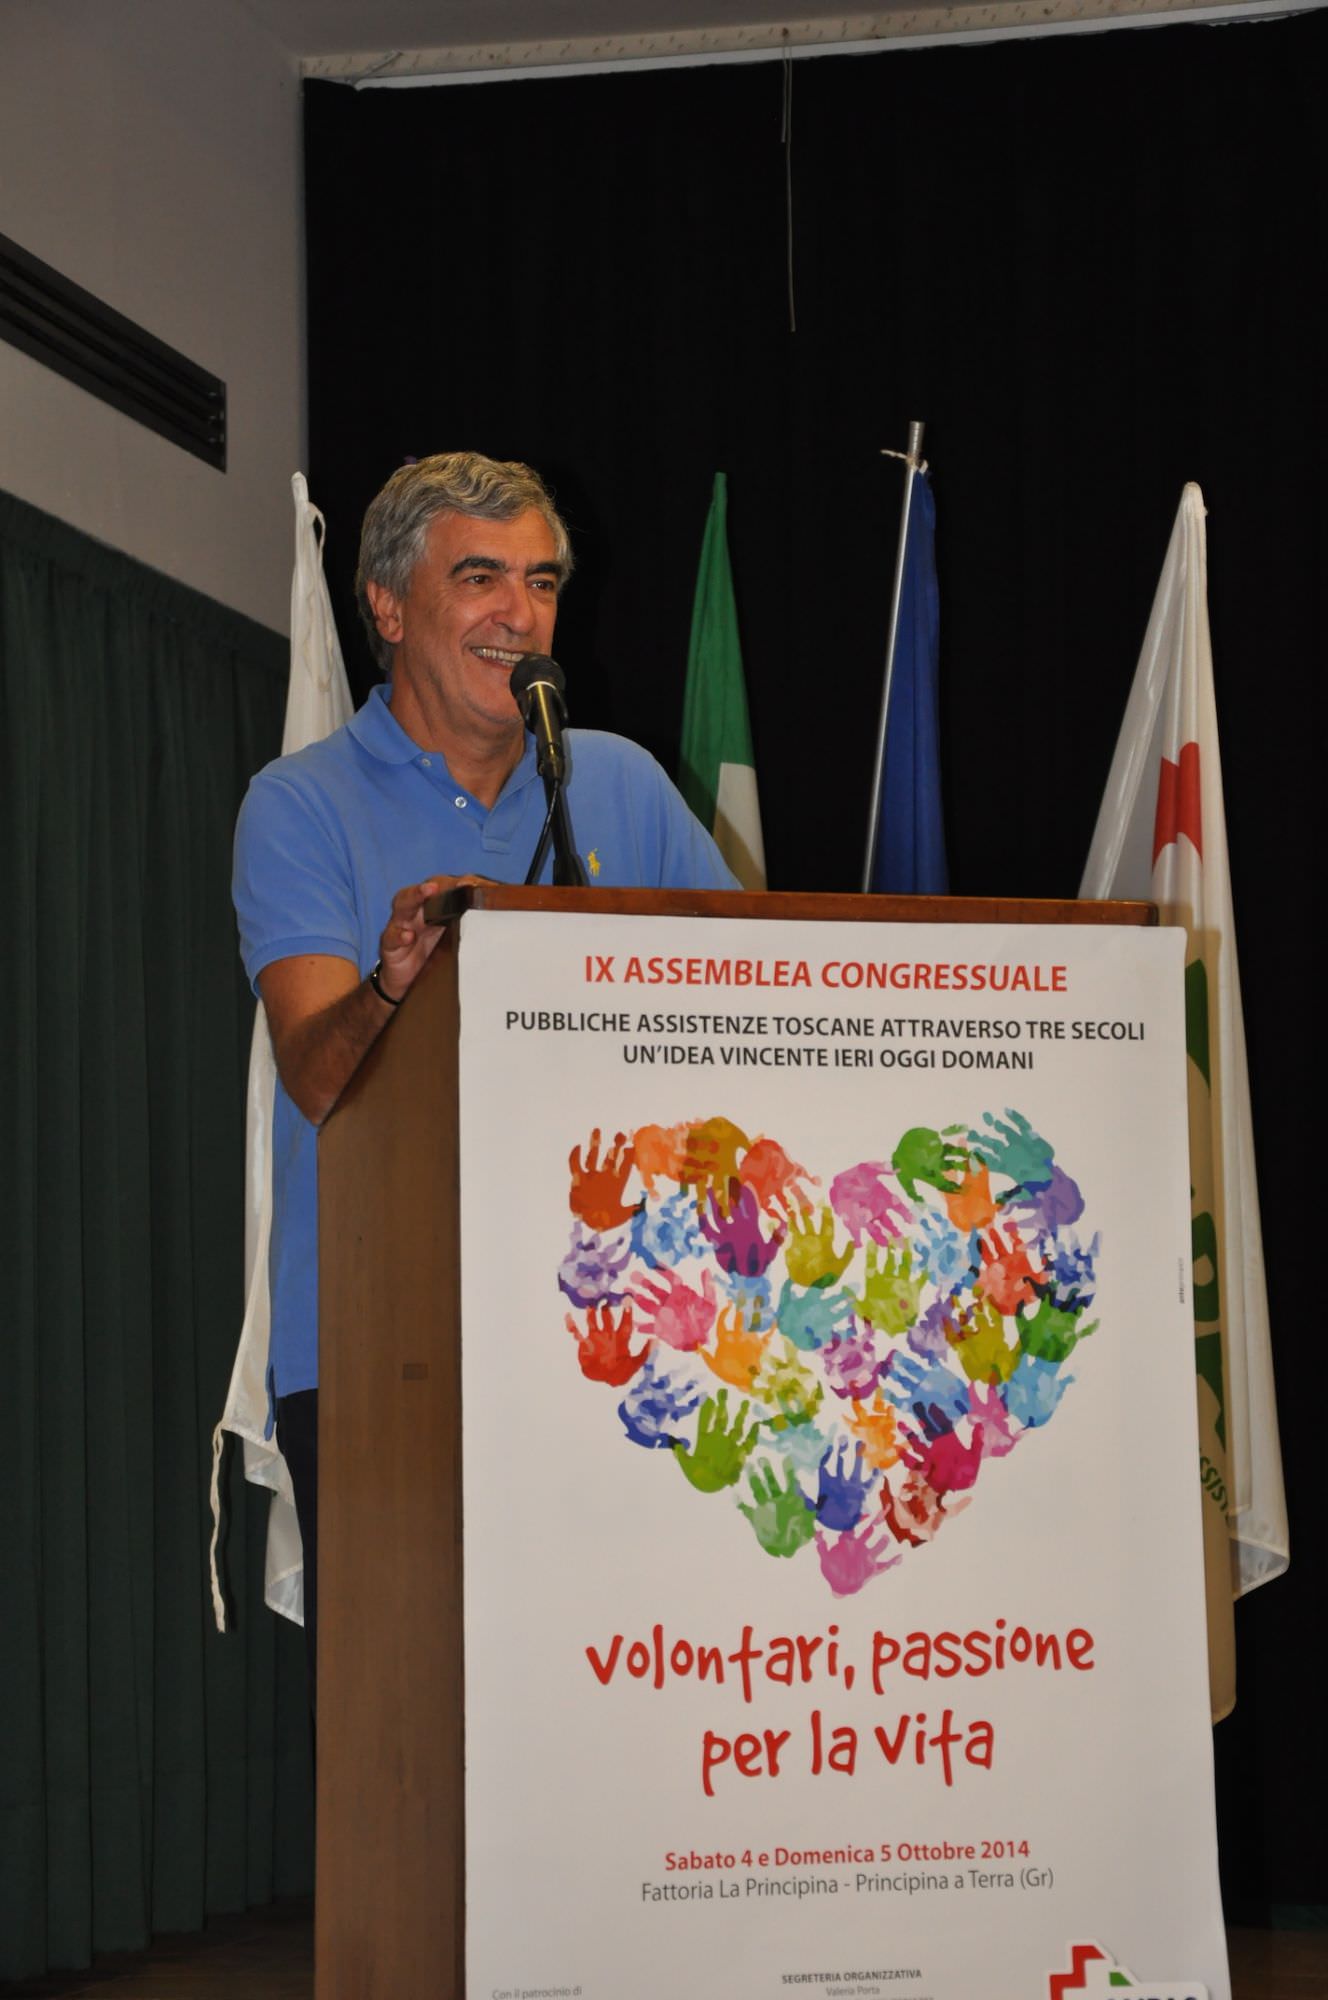 Il viareggino Attilio Farnesi confermato alla guida delle Pubbliche Assistenze Toscane